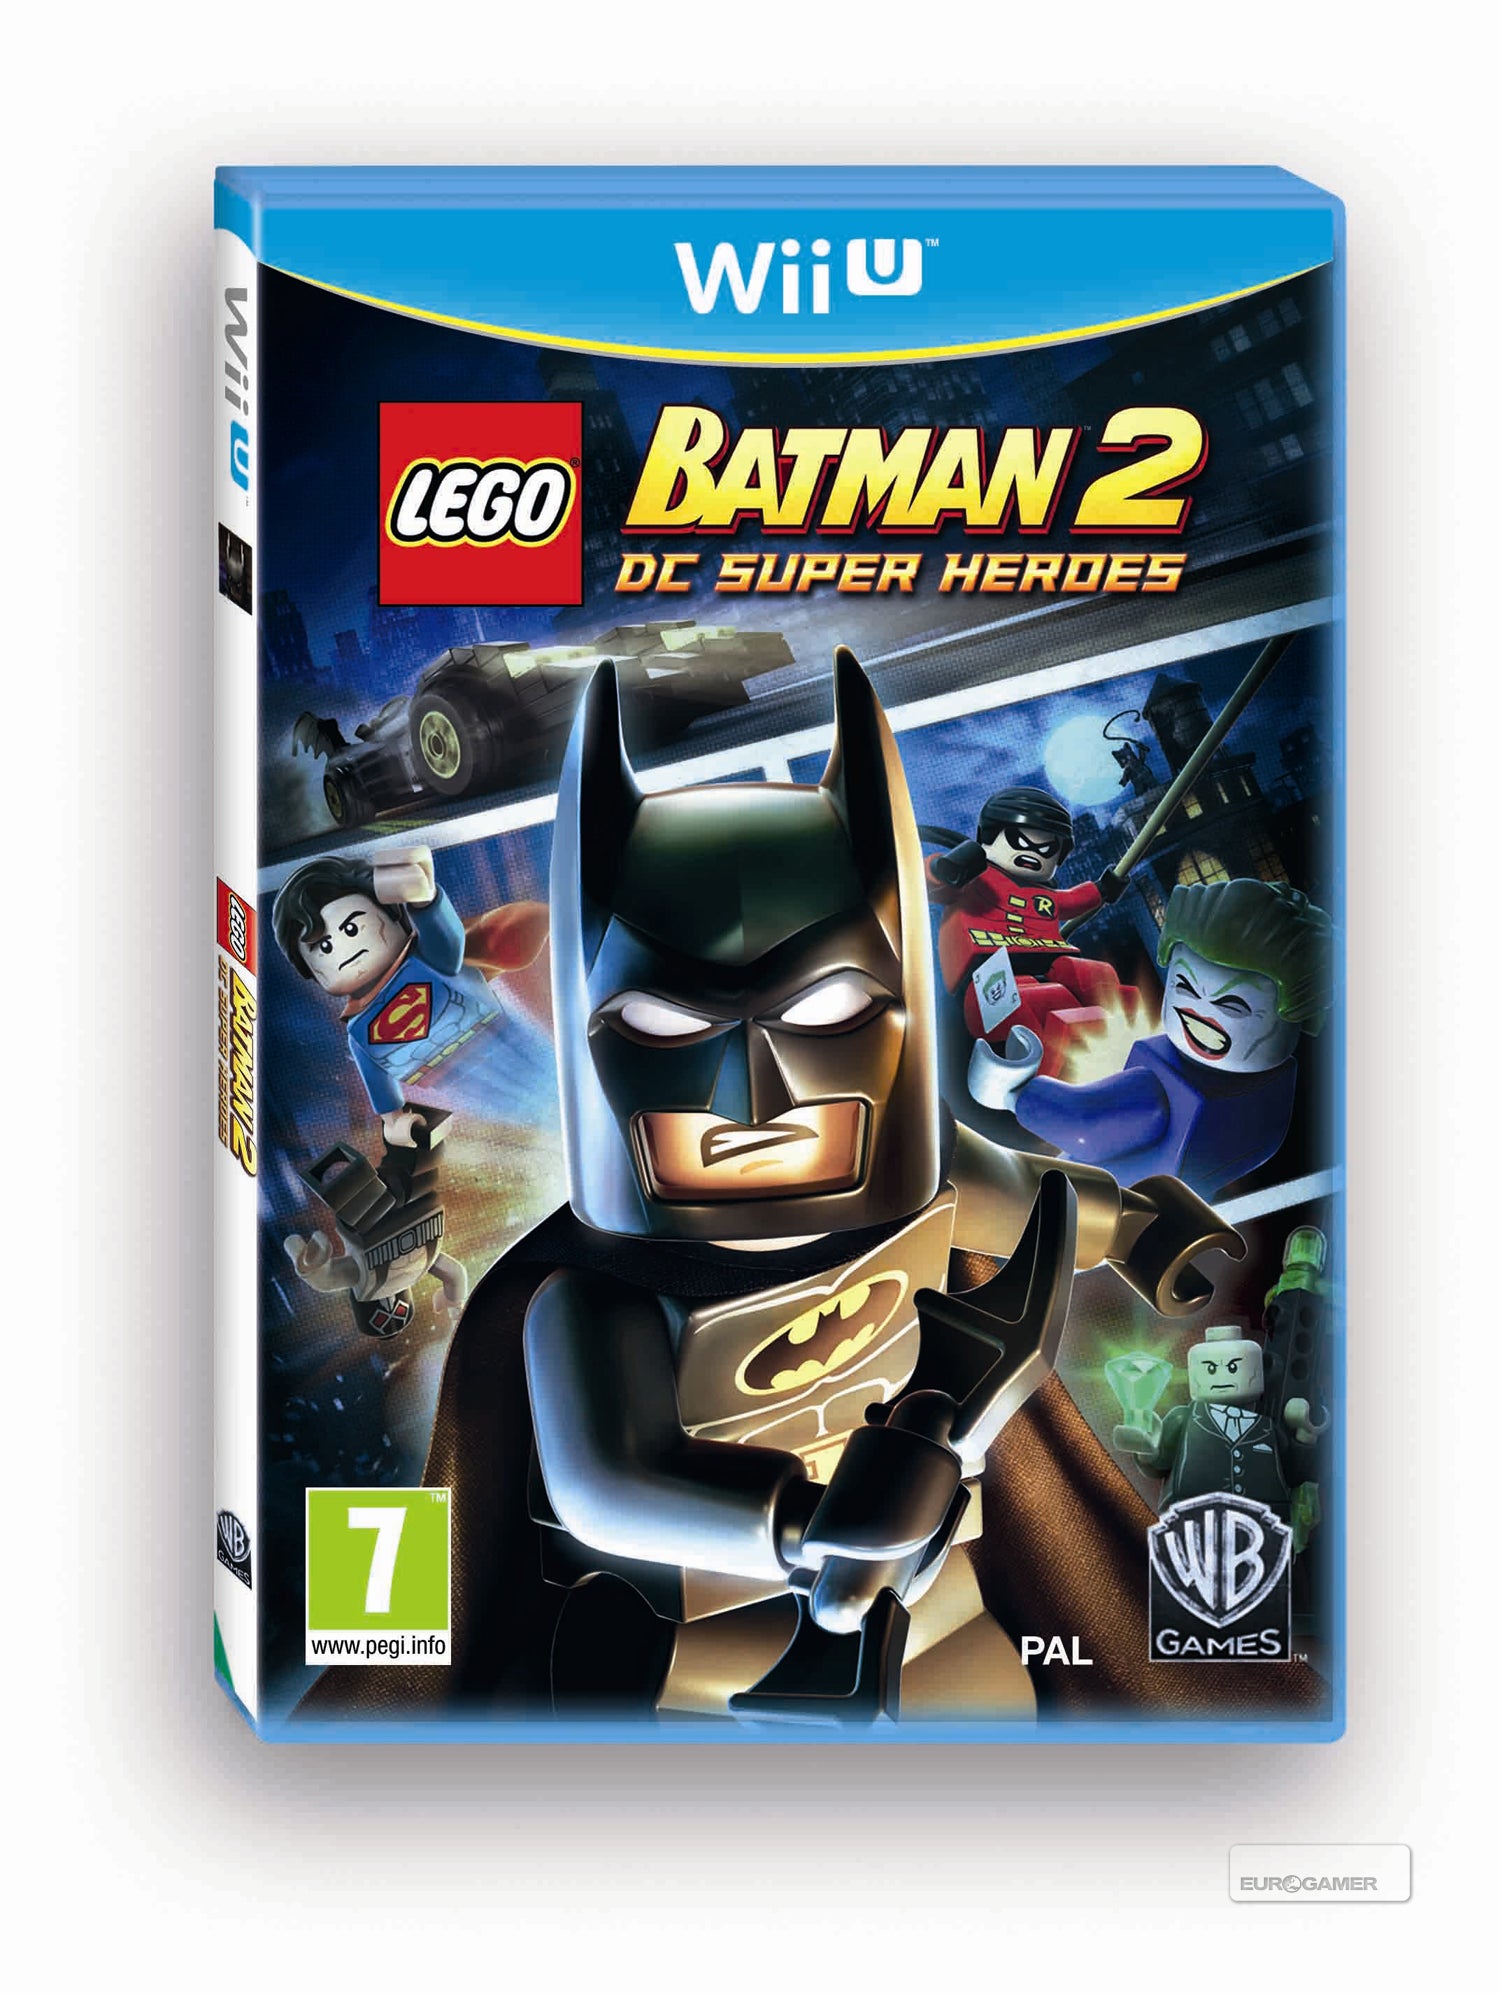 Grande Caucho trigo LEGO Batman 2: DC Super Heroes tendrá versión para Wii U | Eurogamer.es